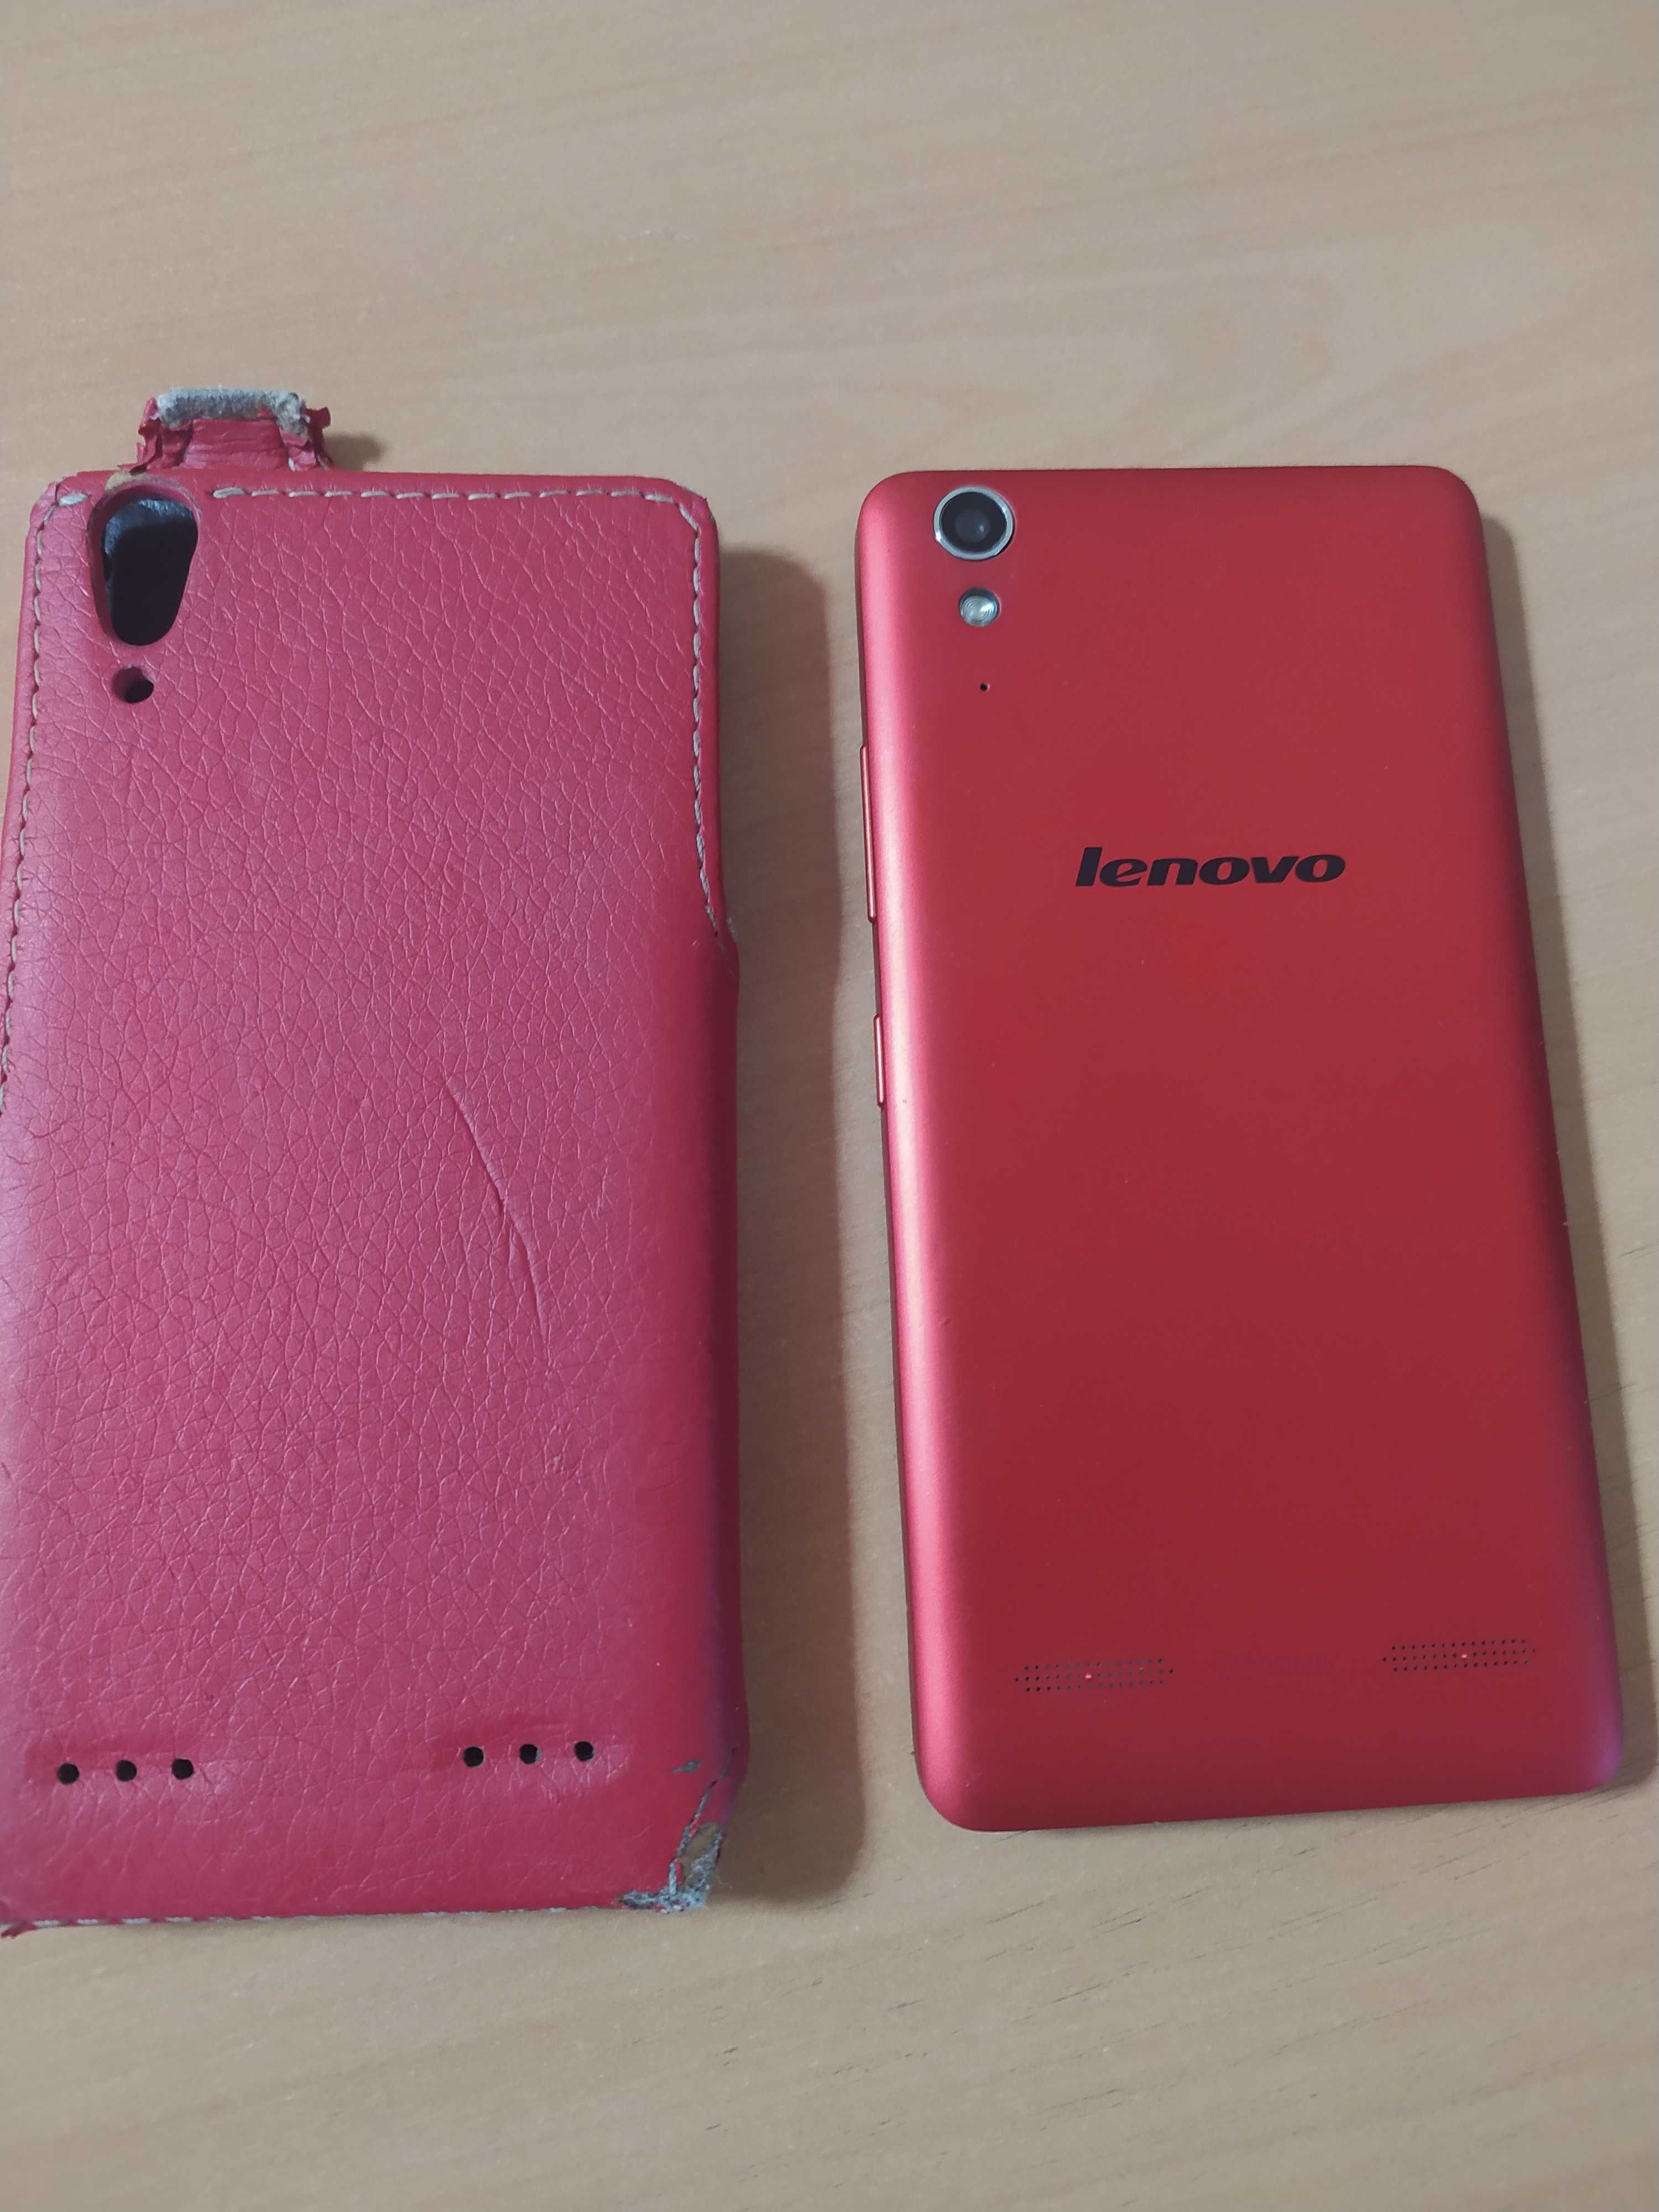 Мобильный телефон с 4G(LTE) Lenovo A6000